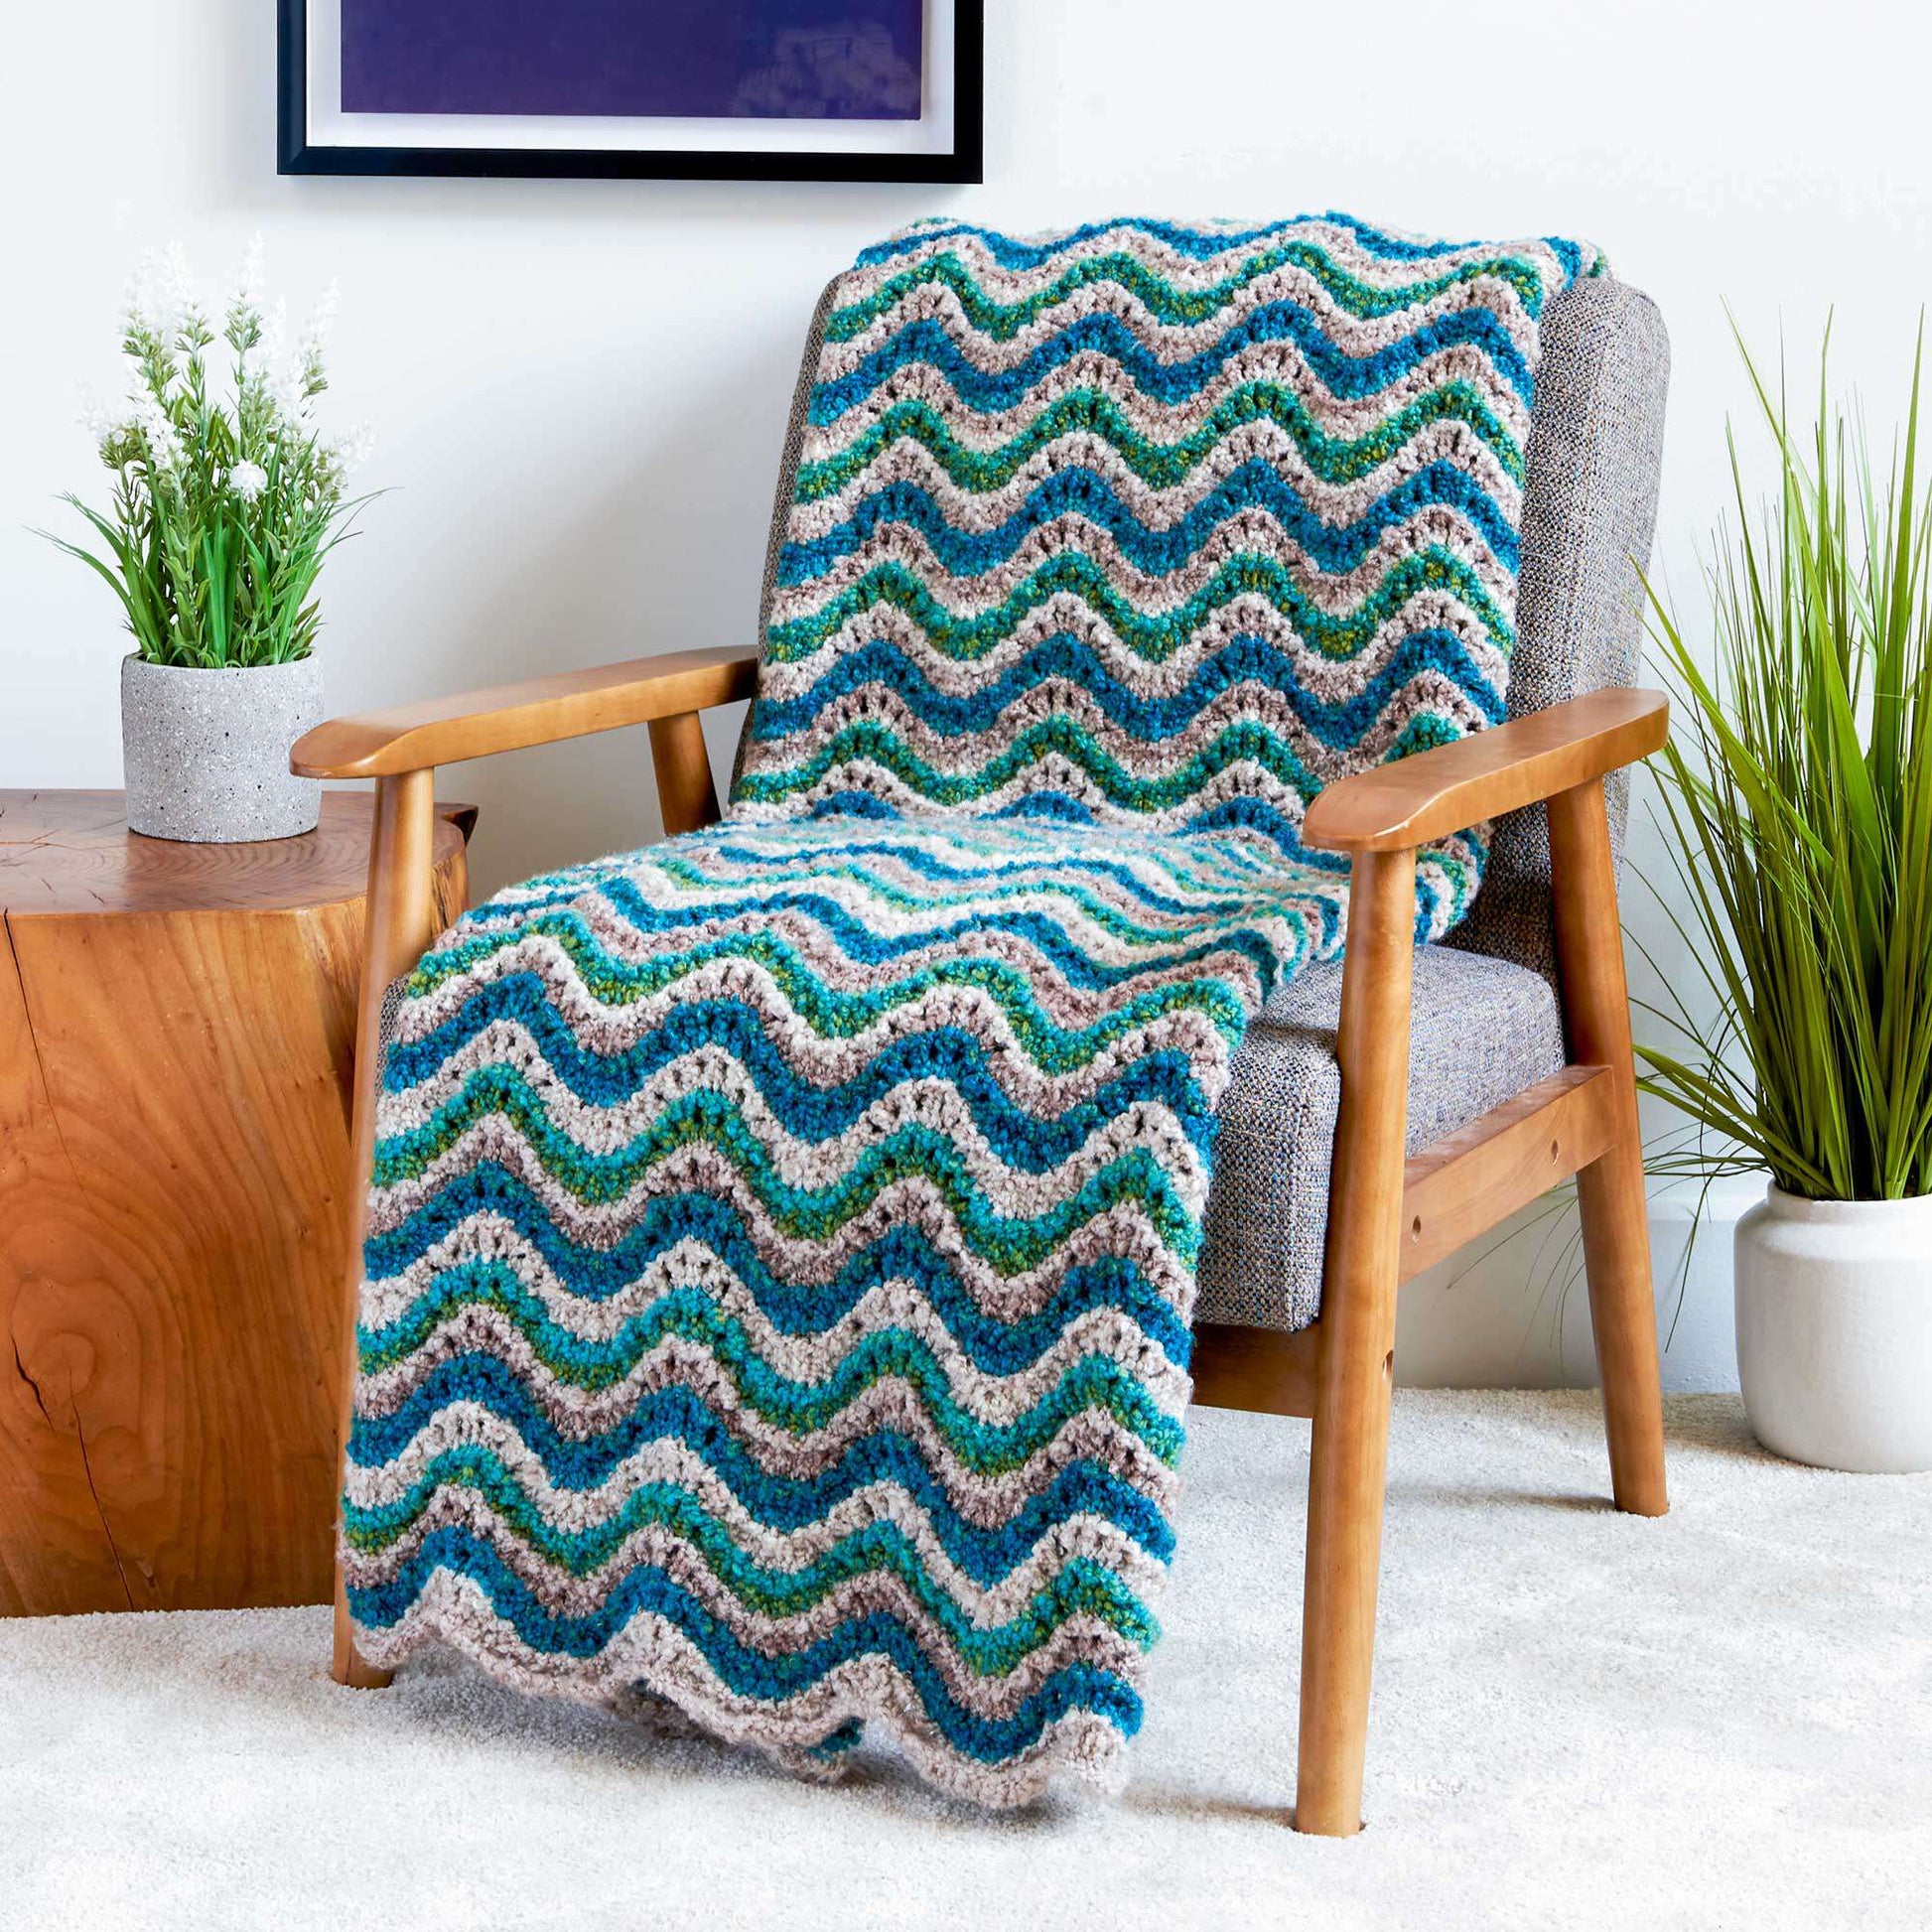 Free Bernat Simple Shale Knit Blanket Pattern